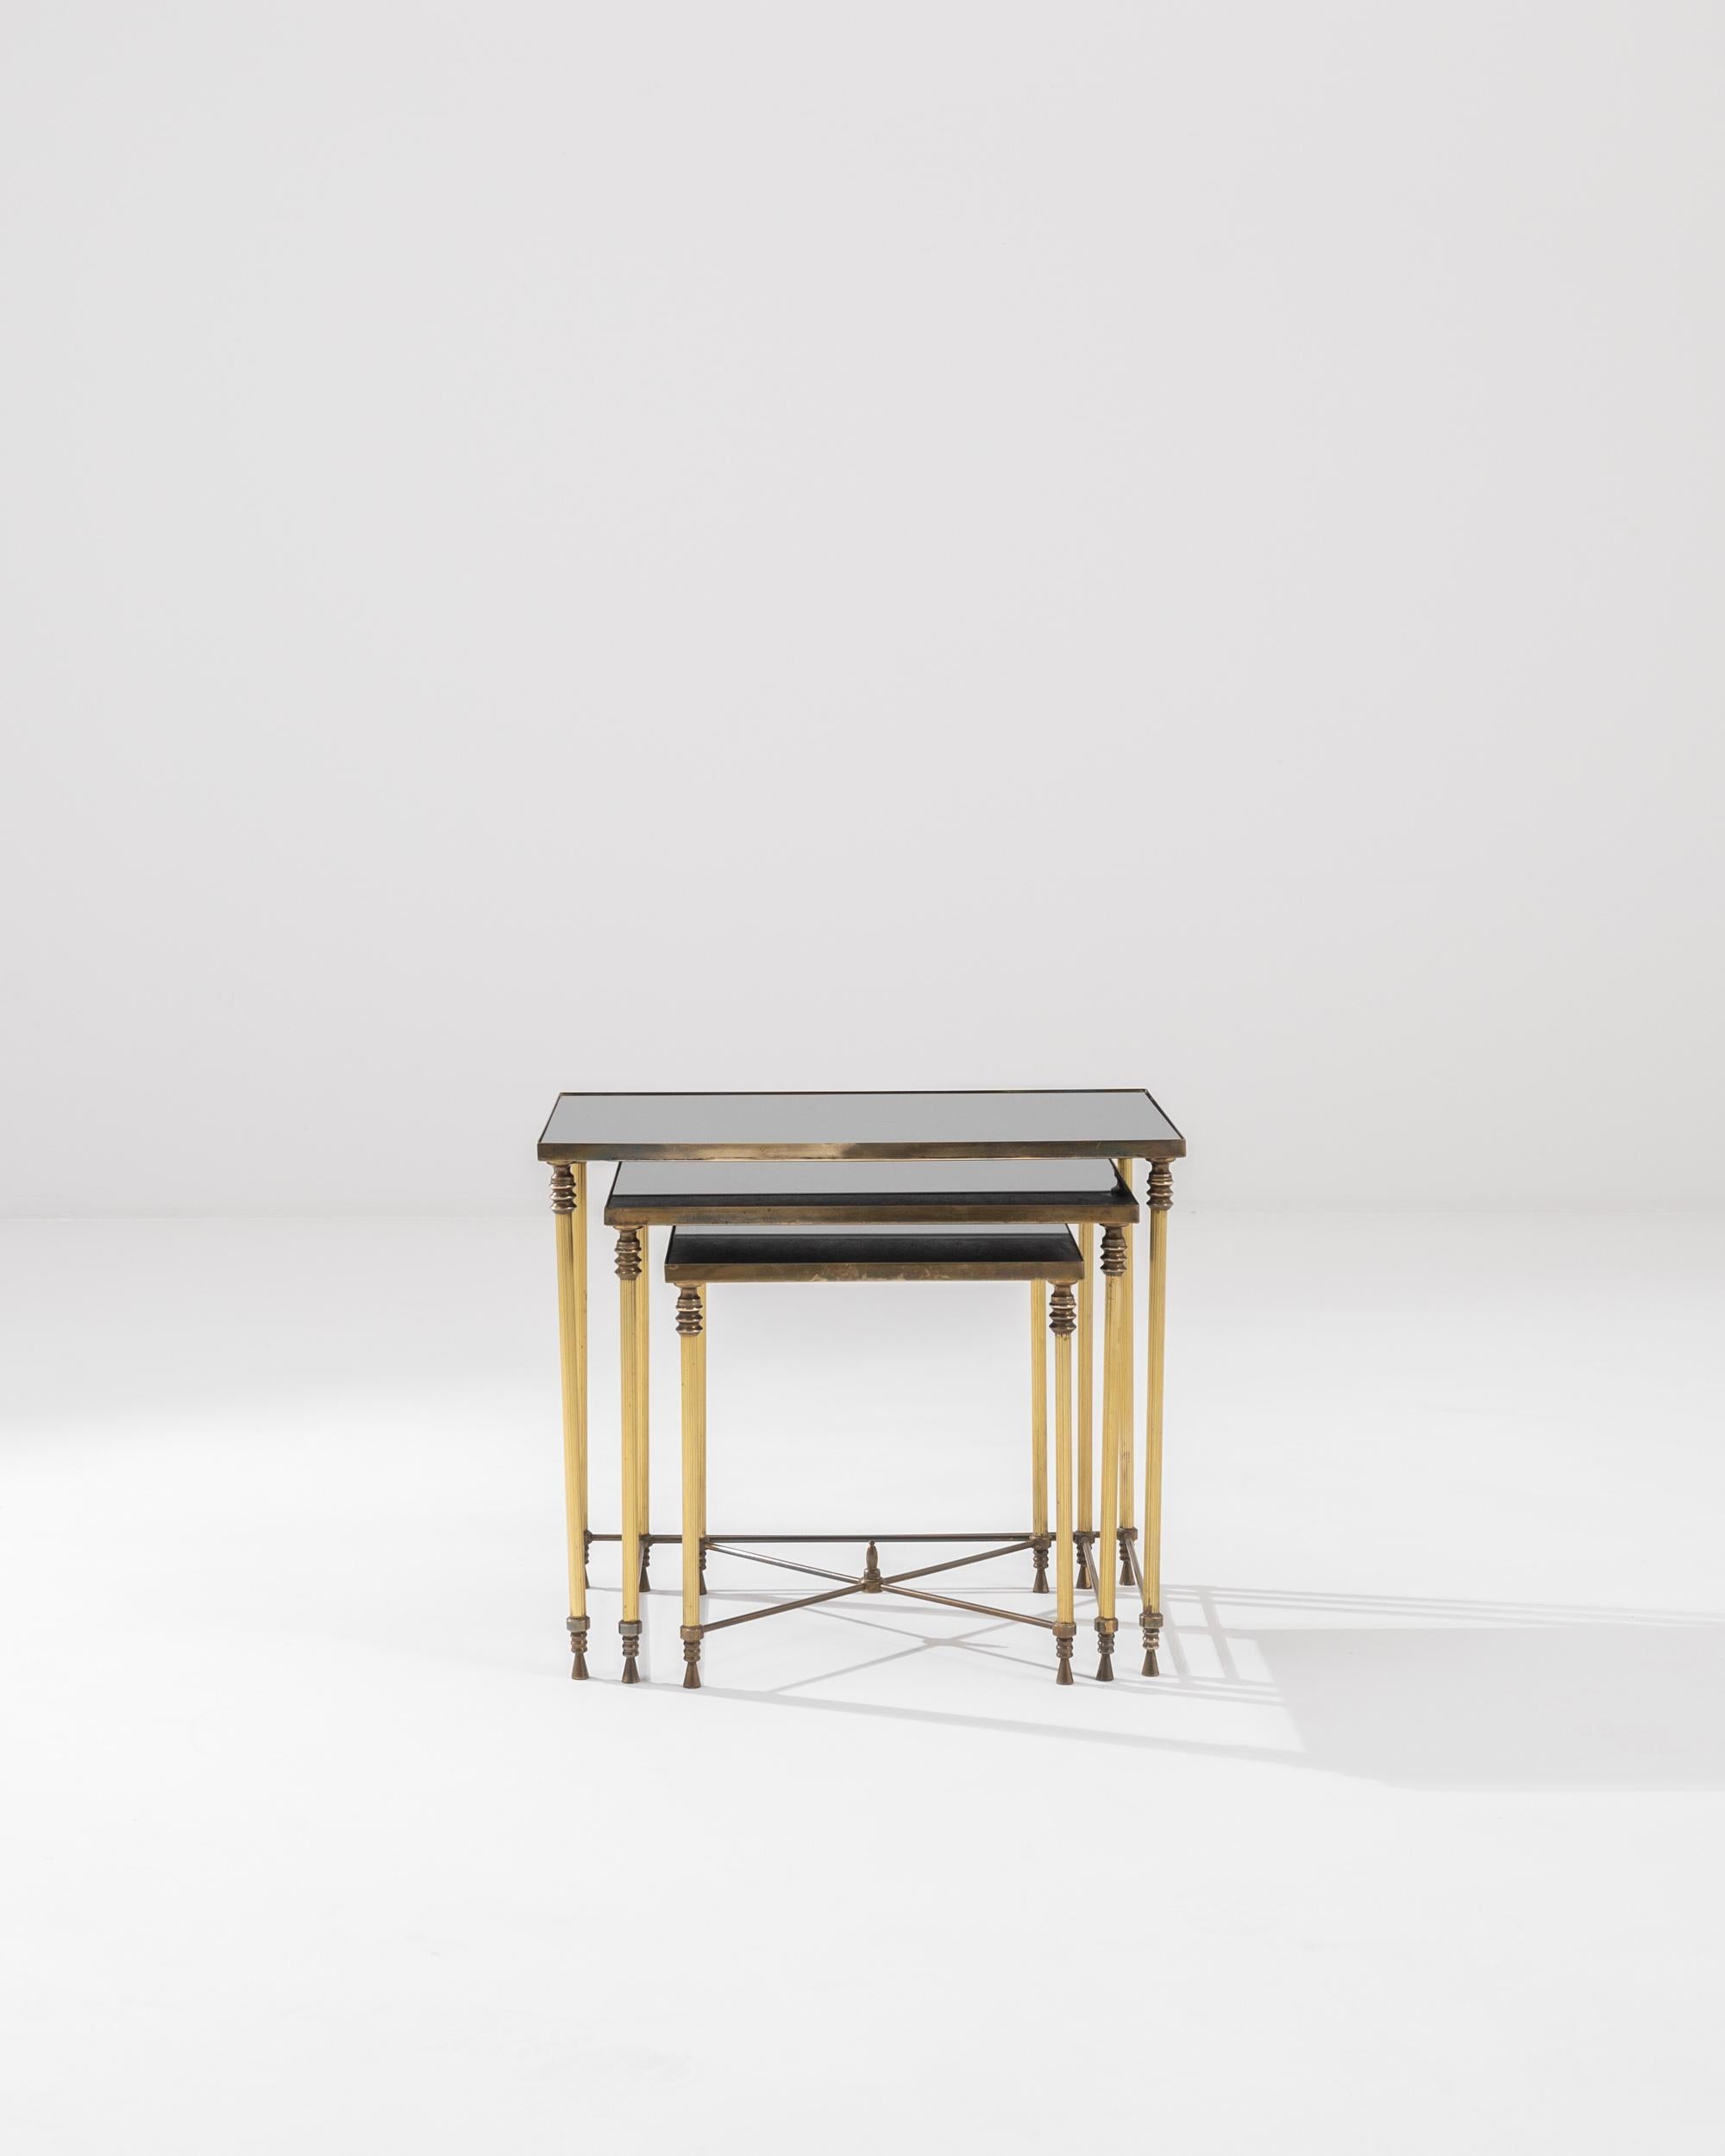 Ensemble de tables gigognes en métal avec plateaux en verre, France, 20e siècle. La base en laiton, les pieds dorés et le verre teinté foncé forment une palette de couleurs agréablement lumineuses. La patine qui s'est répandue sur le métal indique